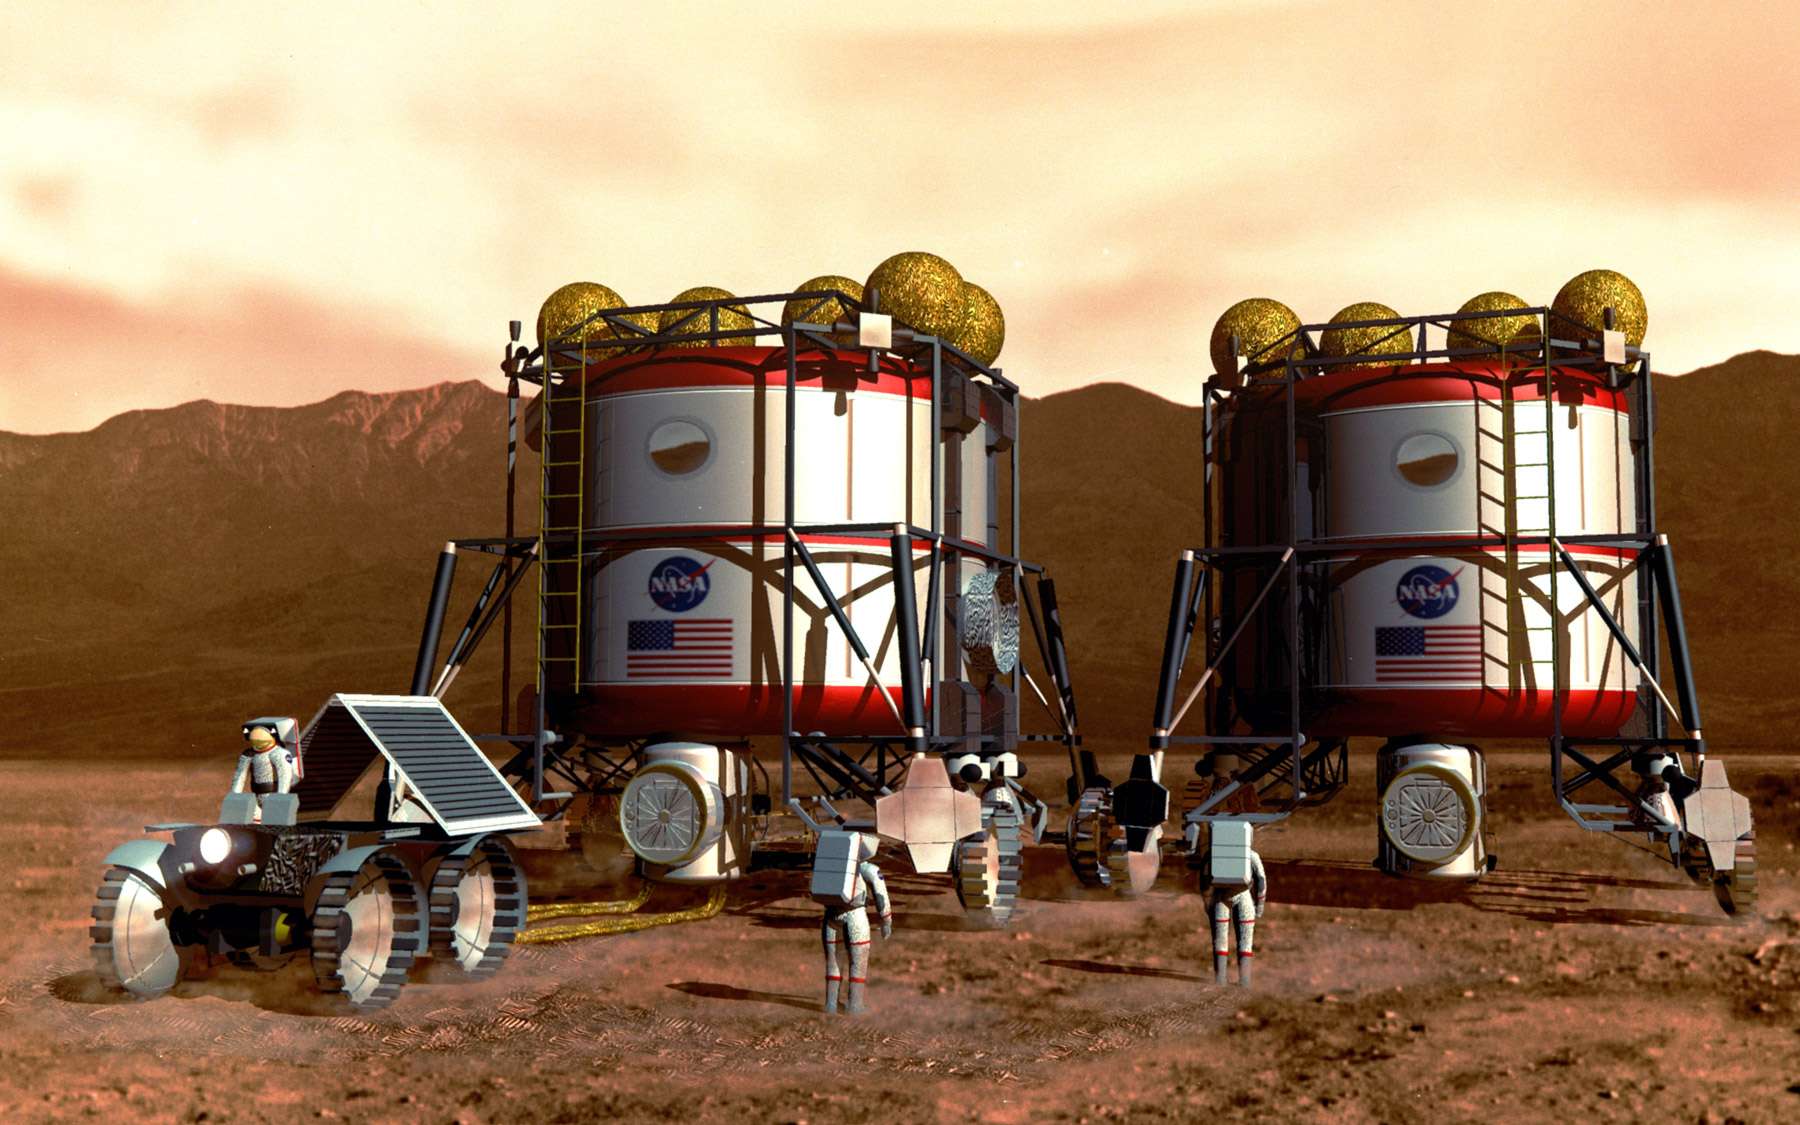 La Nasa veut envoyer des Hommes sur Mars via la Lune